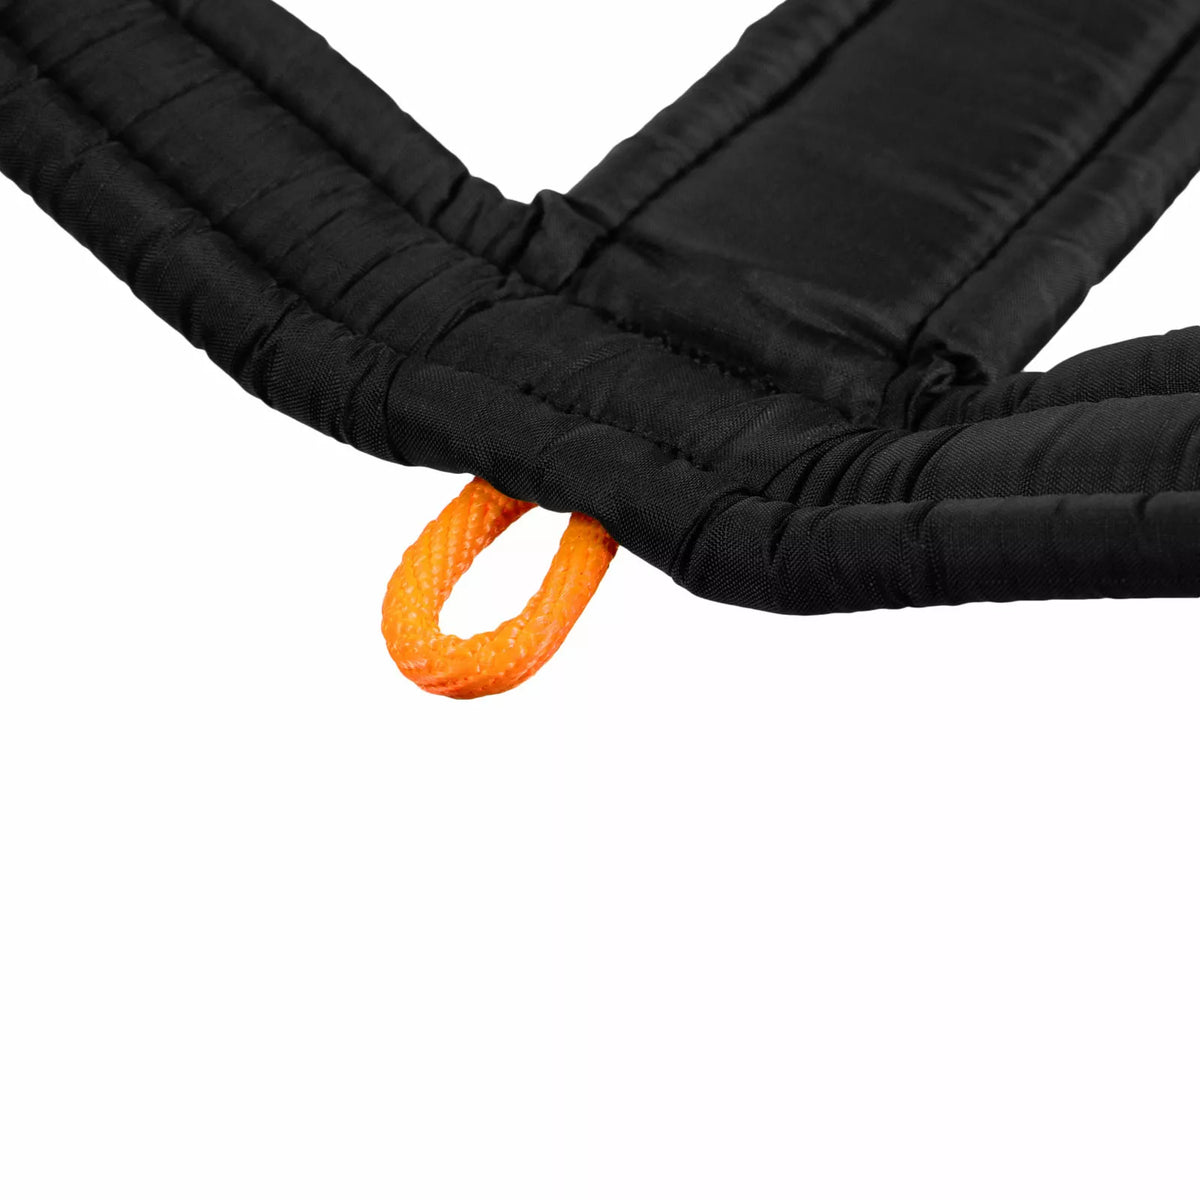 Geschirr Non-Stop Line Harness 5.0 - orange